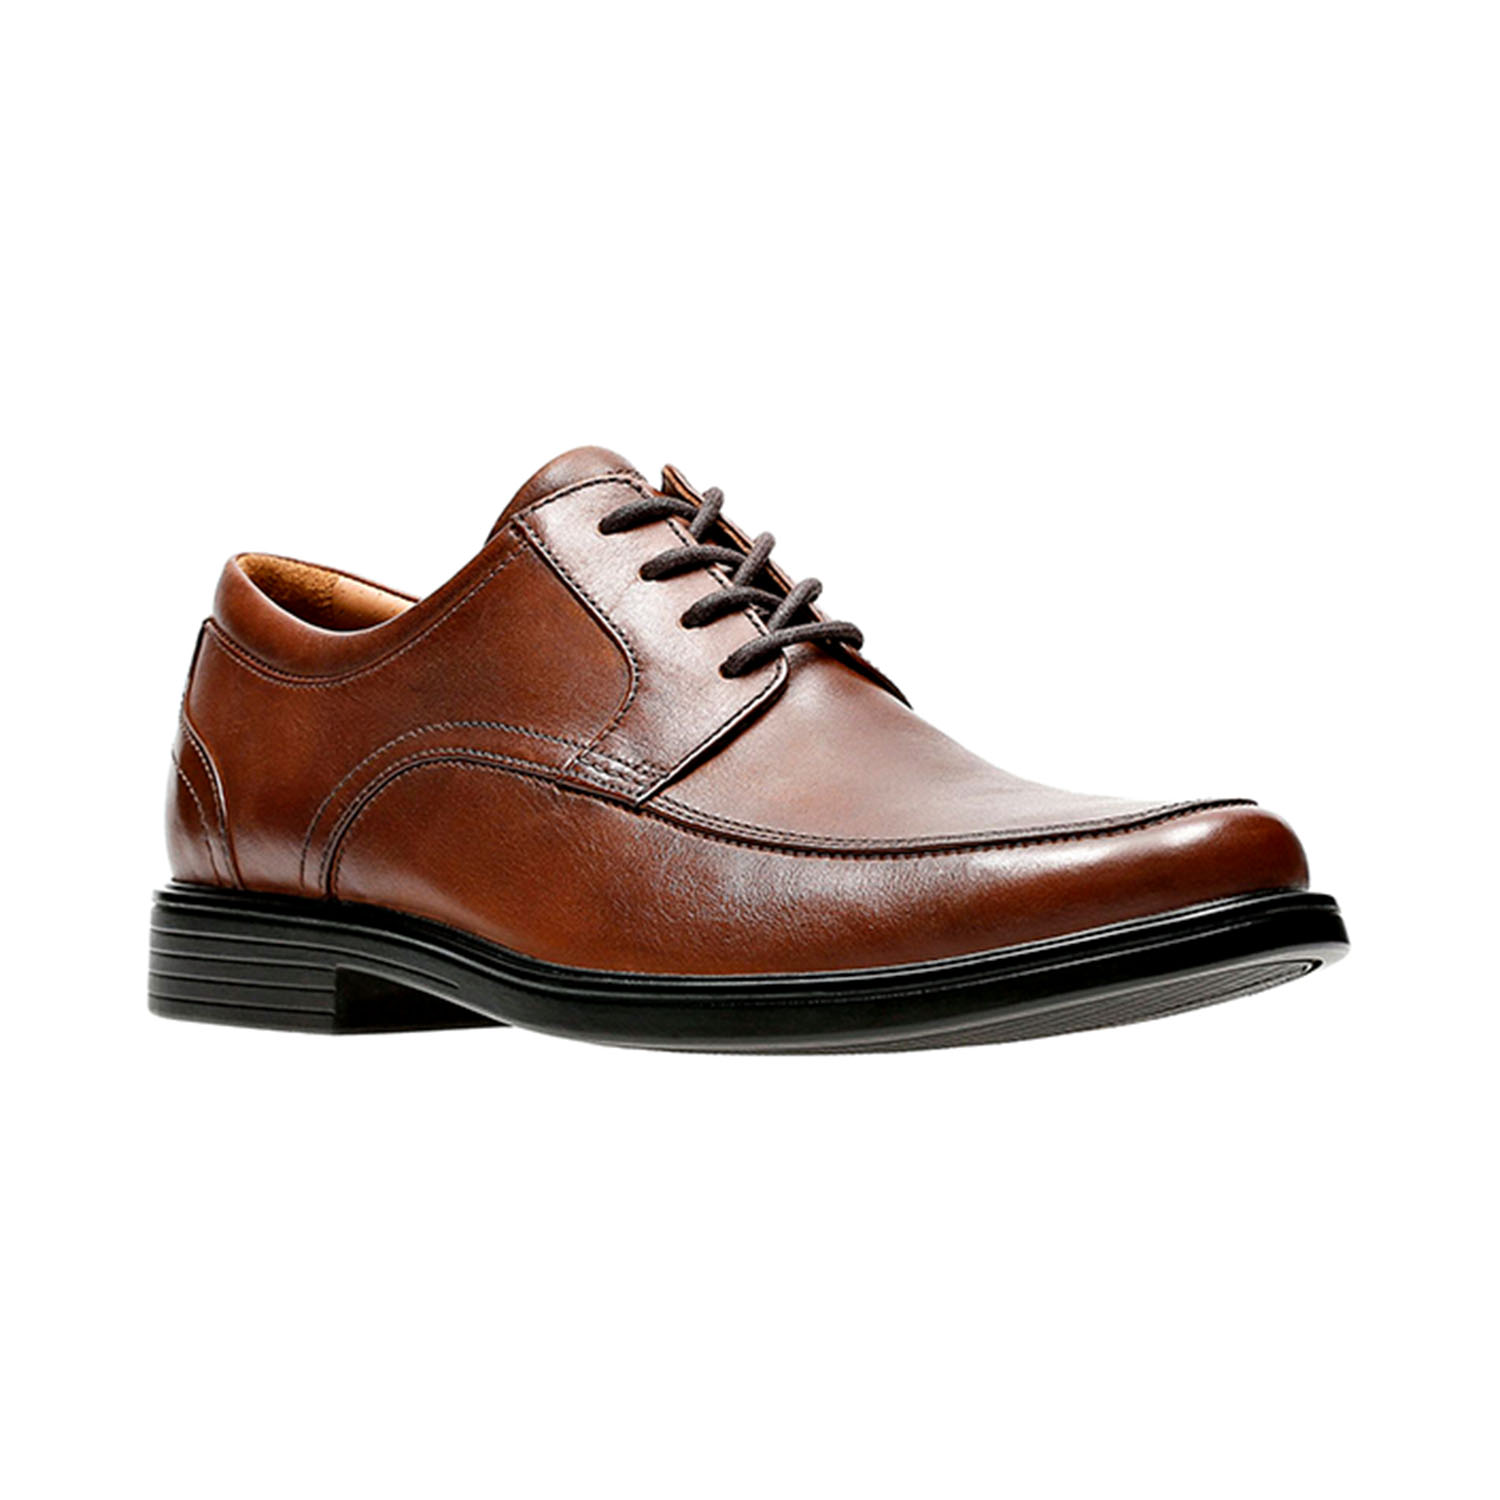 Clarks Un Aldric Park (Extra Wide) Mens Shoes Tan Leather 26132672-W | eBay